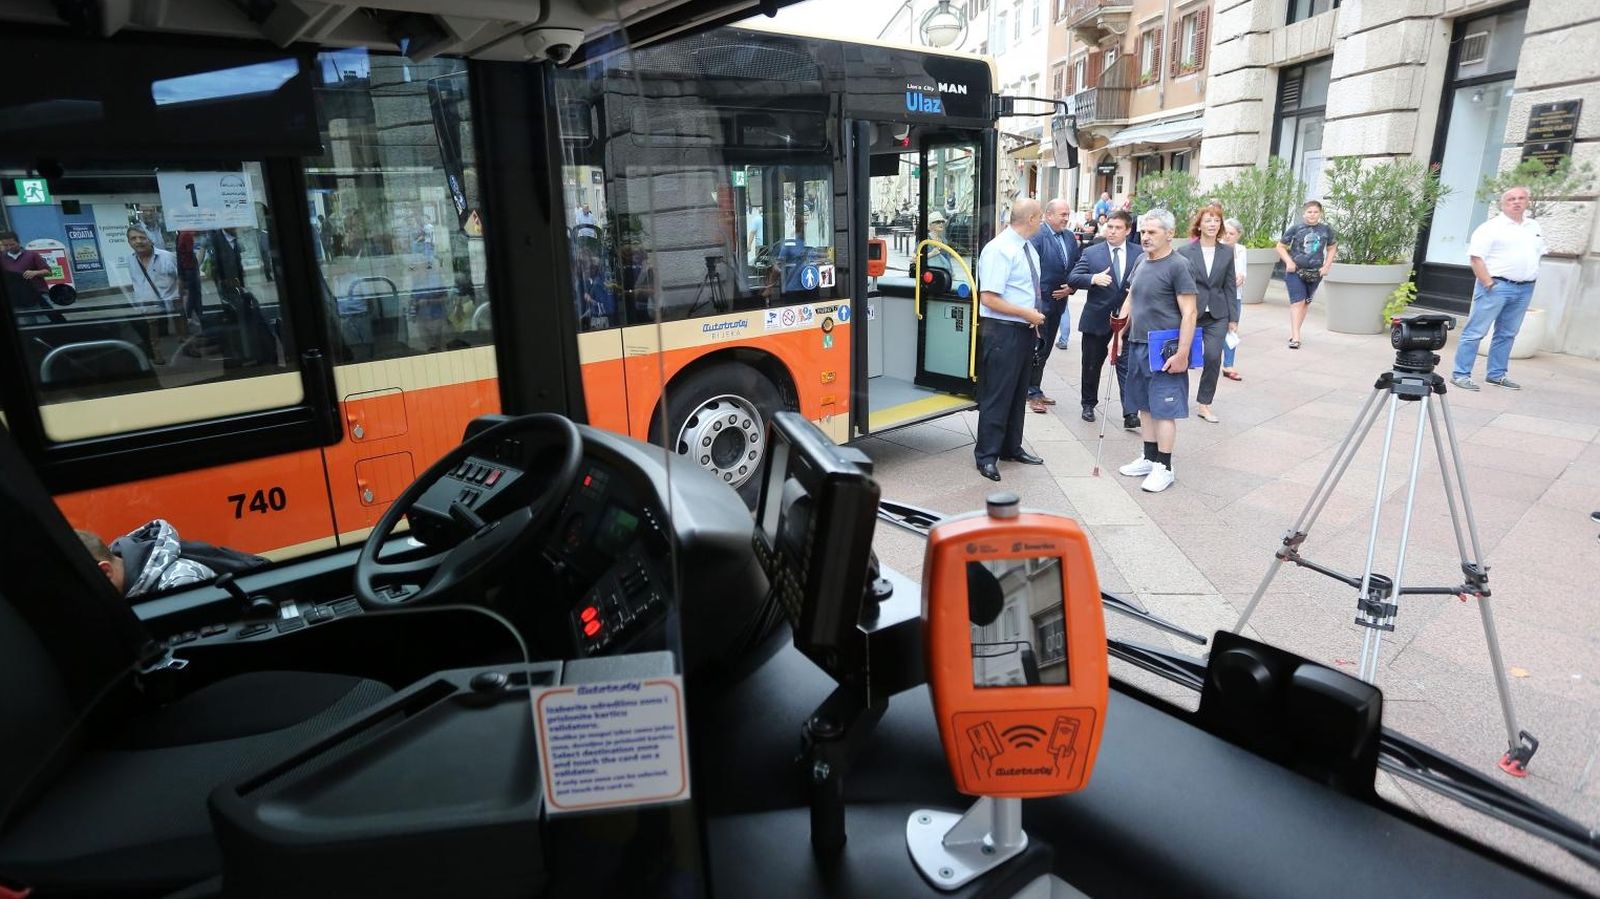 06.09.2019., Rijeka - Komunalno drustvo Autotrolej predstavilo je na Korzu 9 novih autobusa marke MAN. Photo:Goran Kovacic/PIXSELL